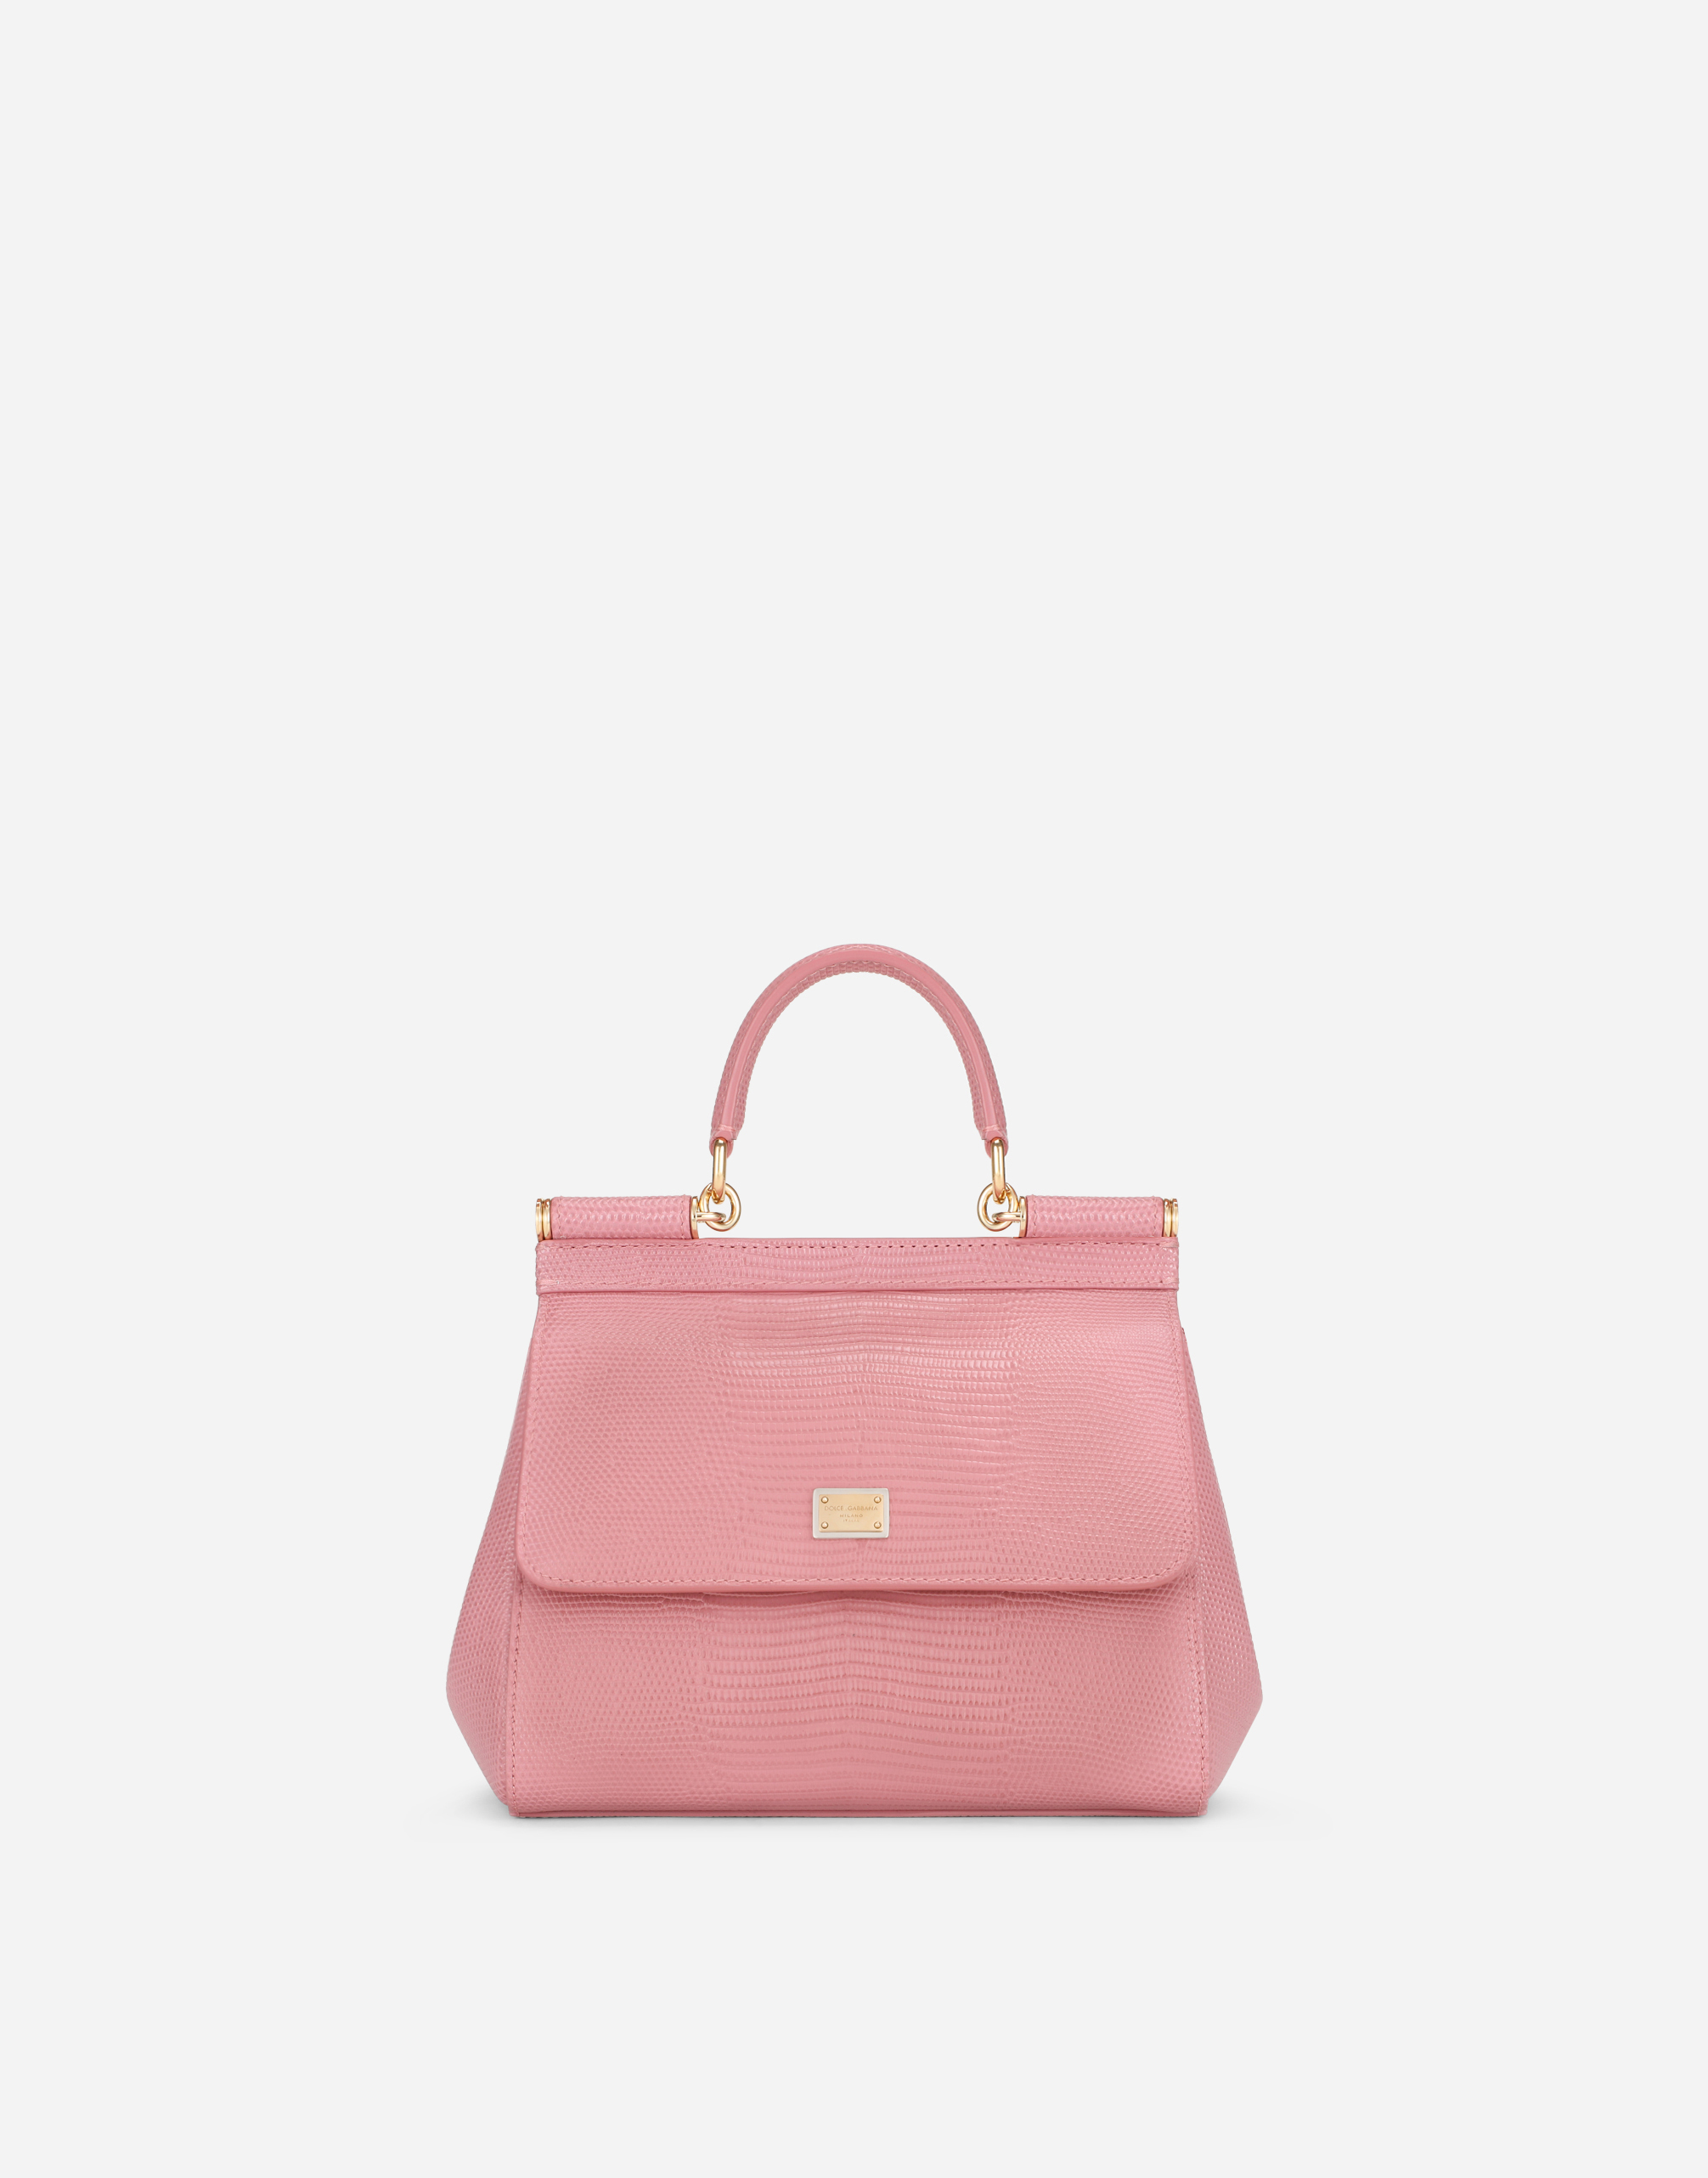 Medium Sicily handbag in Pink